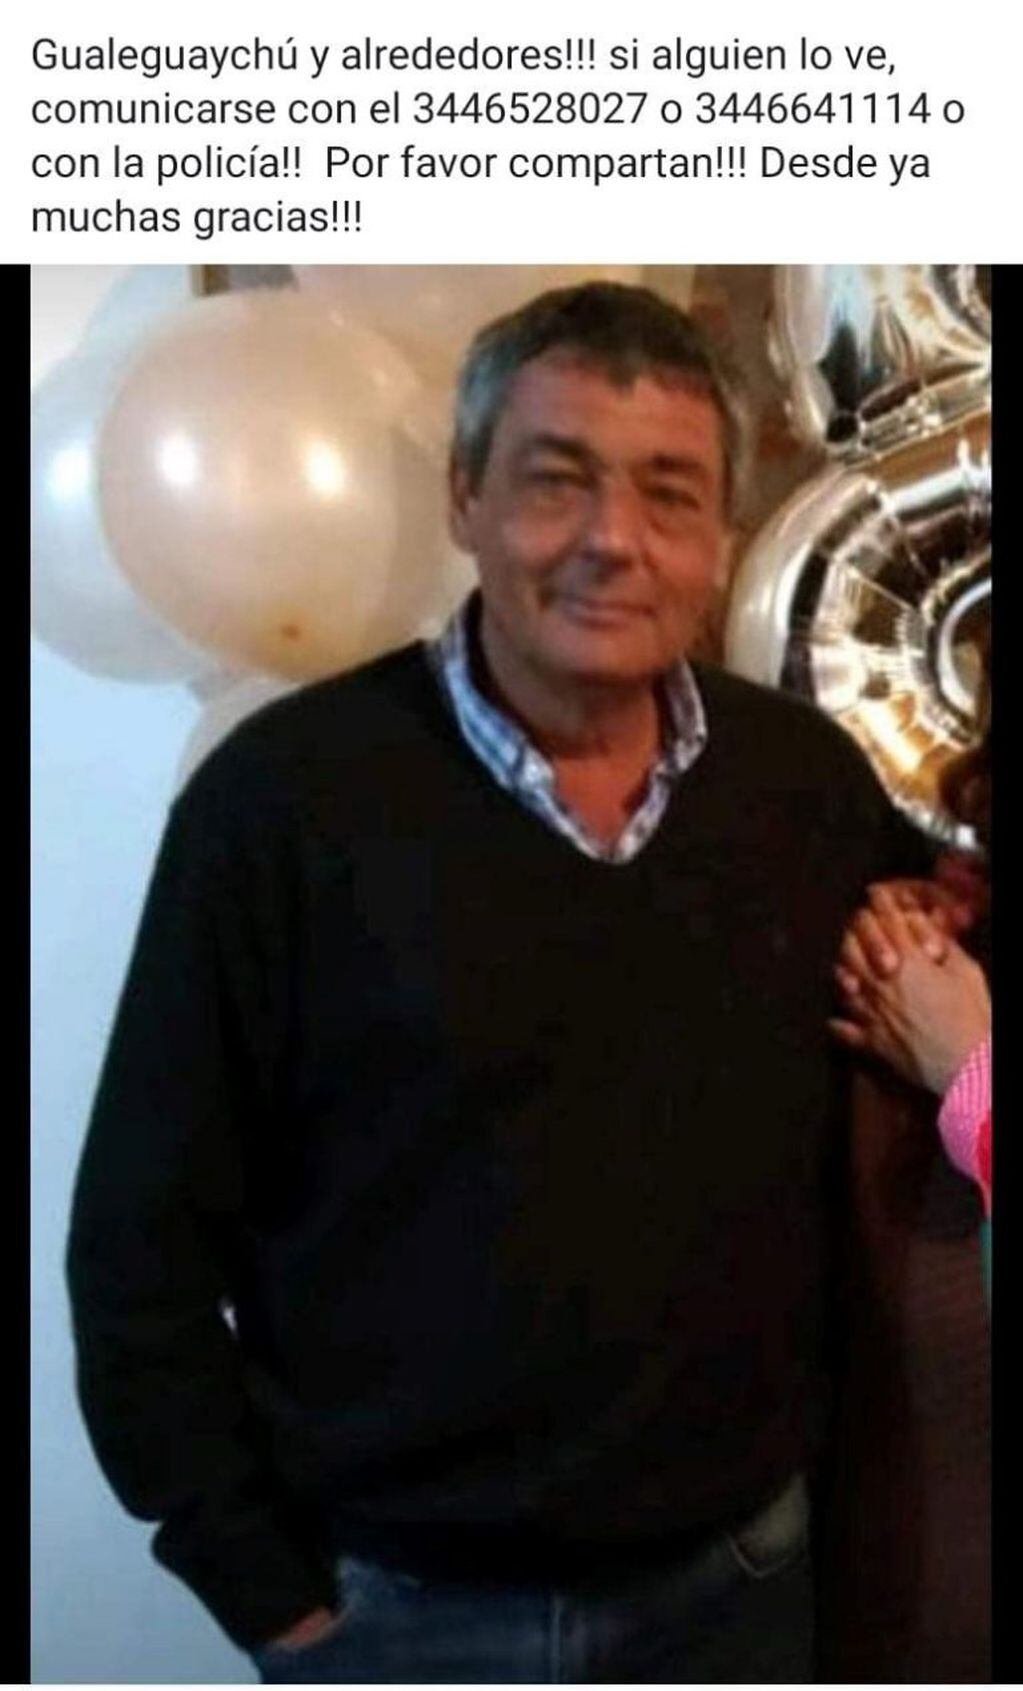 Fabio Cortesi de 51 años, está desaparecido desde el pasado jueves en Gualeguaychú
Crédito: Flia Cortesi